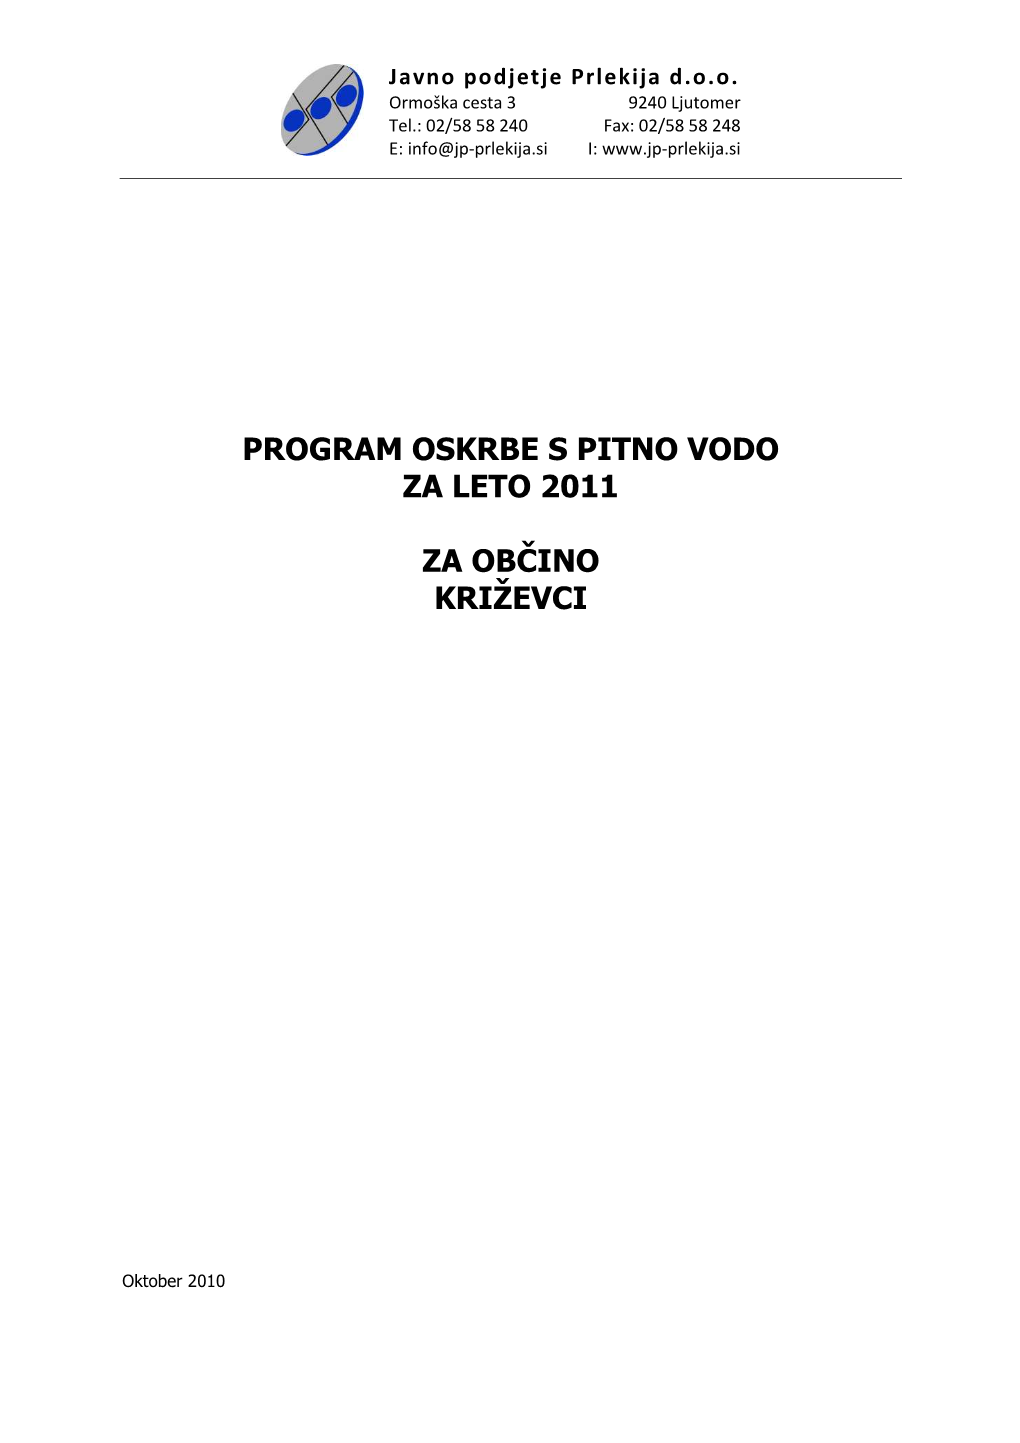 Program PV 2011 Občina Križevci 04012011